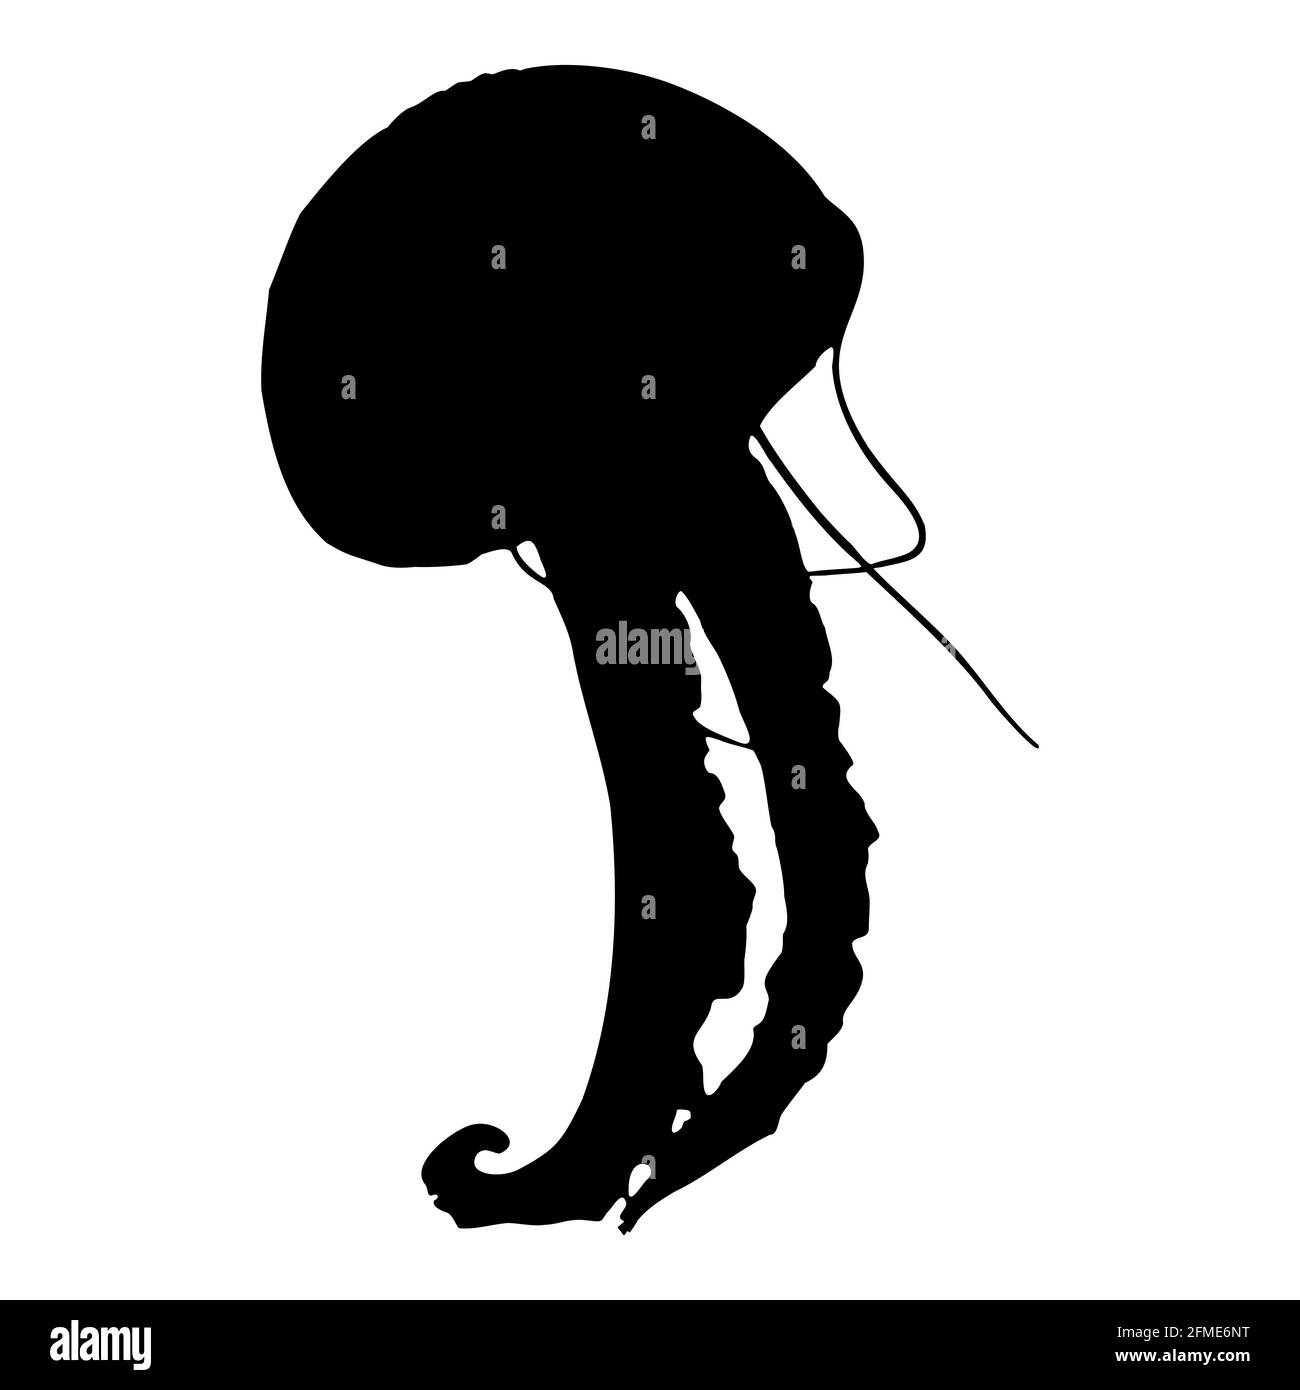 Silhouette isolée noire d'un méduse de mer sur fond blanc. Vue latérale. Graphiques vectoriels EPS 10 Illustration de Vecteur